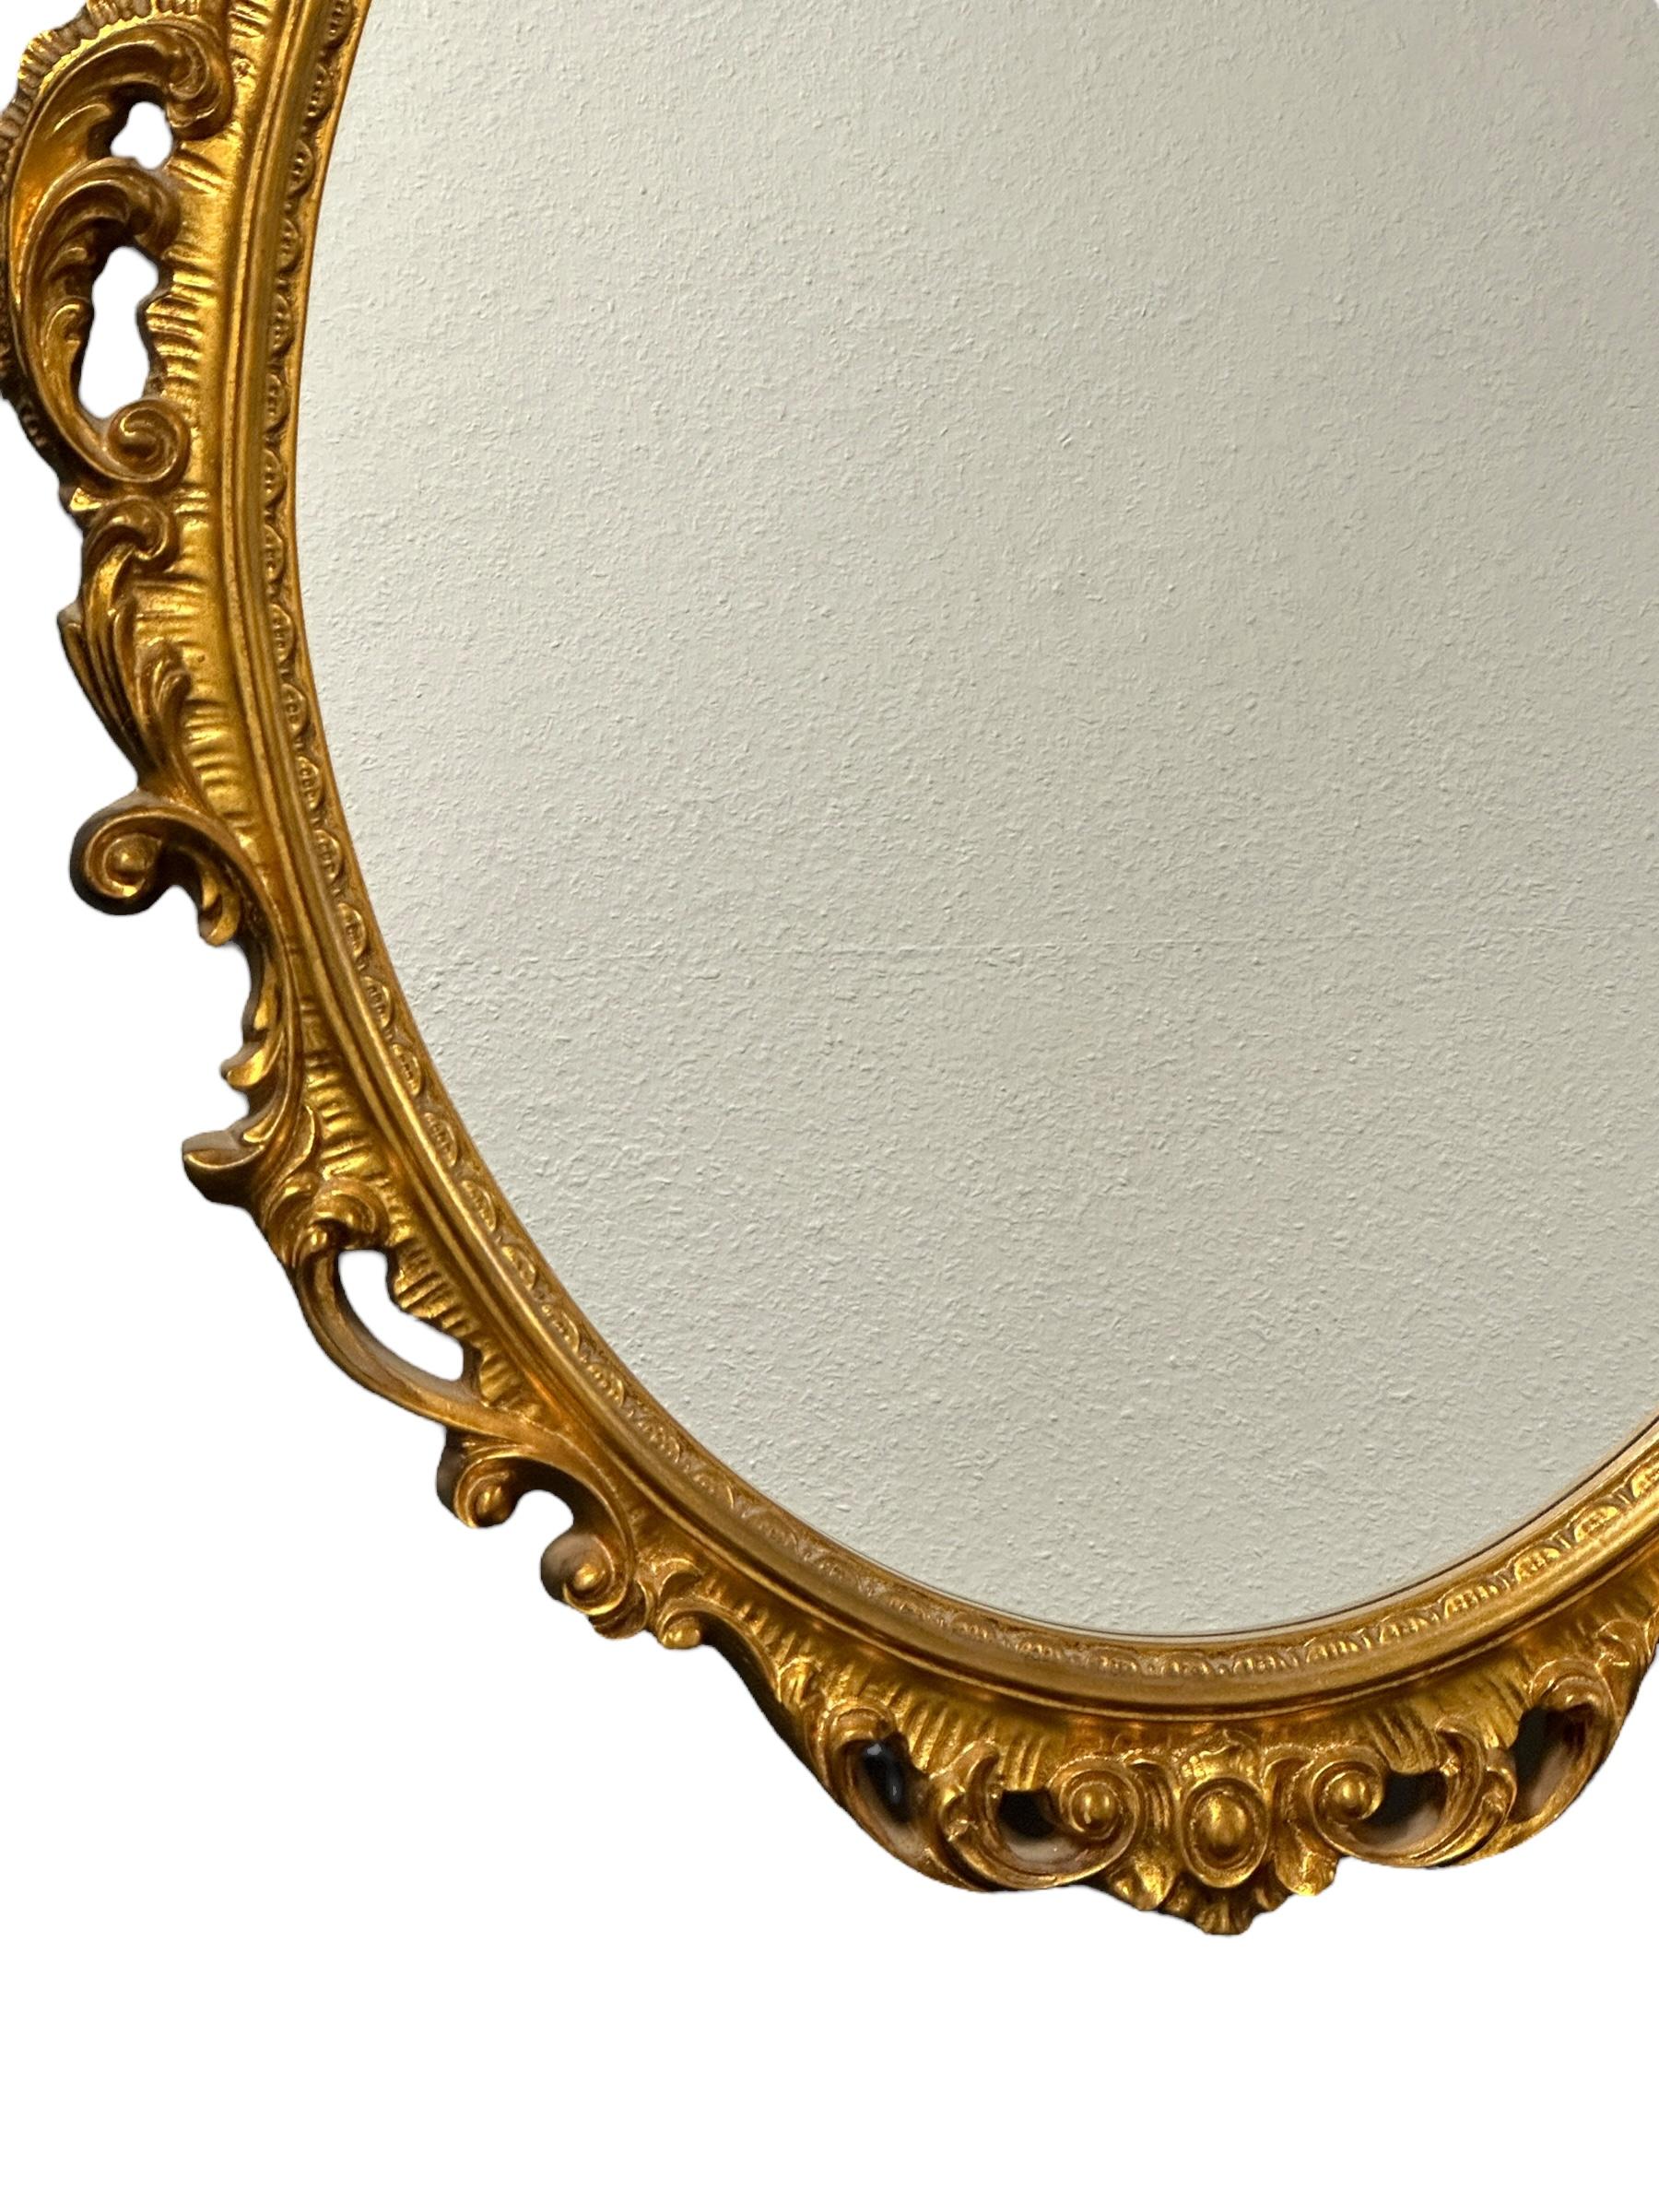 Superbe miroir en faïence. Le cadre doré entoure un miroir en verre. Fabriqué en Italie, vers les années 1950. Magnifique miroir pour toute pièce ou pour votre entrée. Une belle addition à n'importe quelle pièce. Trouvé dans une vente immobilière à